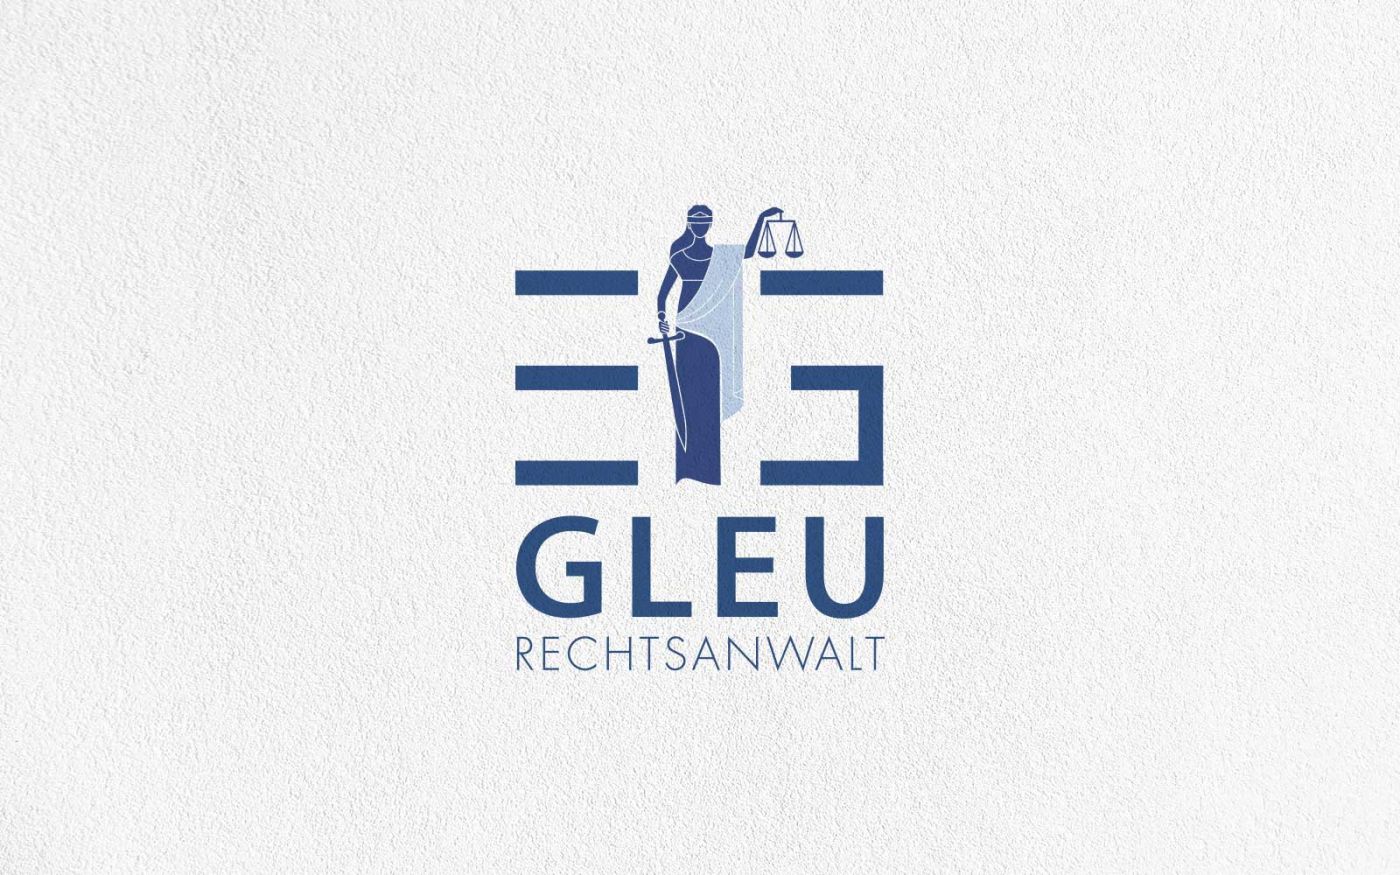 Logo des Rechtsanwaltes Eric Gleu aus Neubrandenburg, das LOGO Media Werbeagentur entwickelt hat.